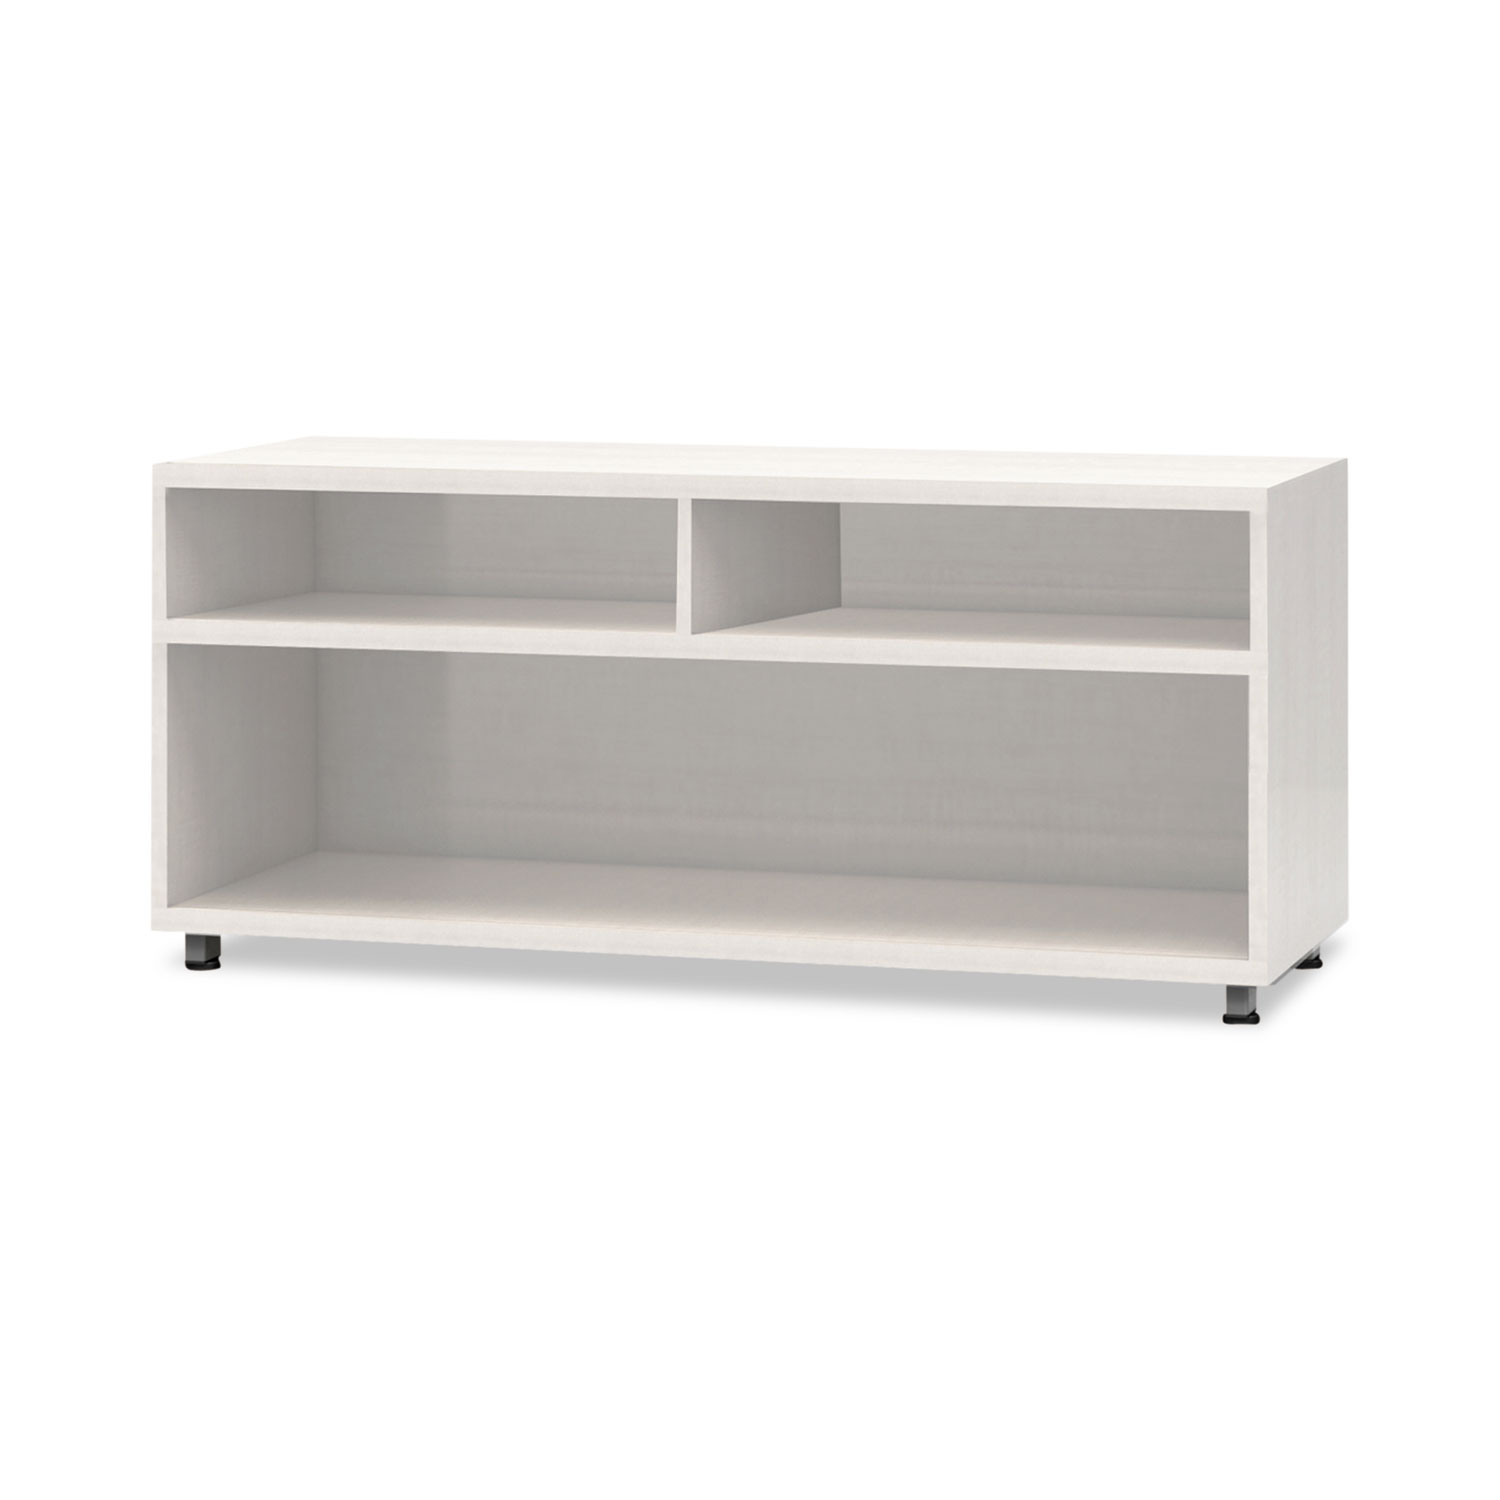  Safco EZ4223AGZ e5 Series Open Storage Cabinet, 42w x 18d x 23h, White (MLNEZ4223AGZ) 